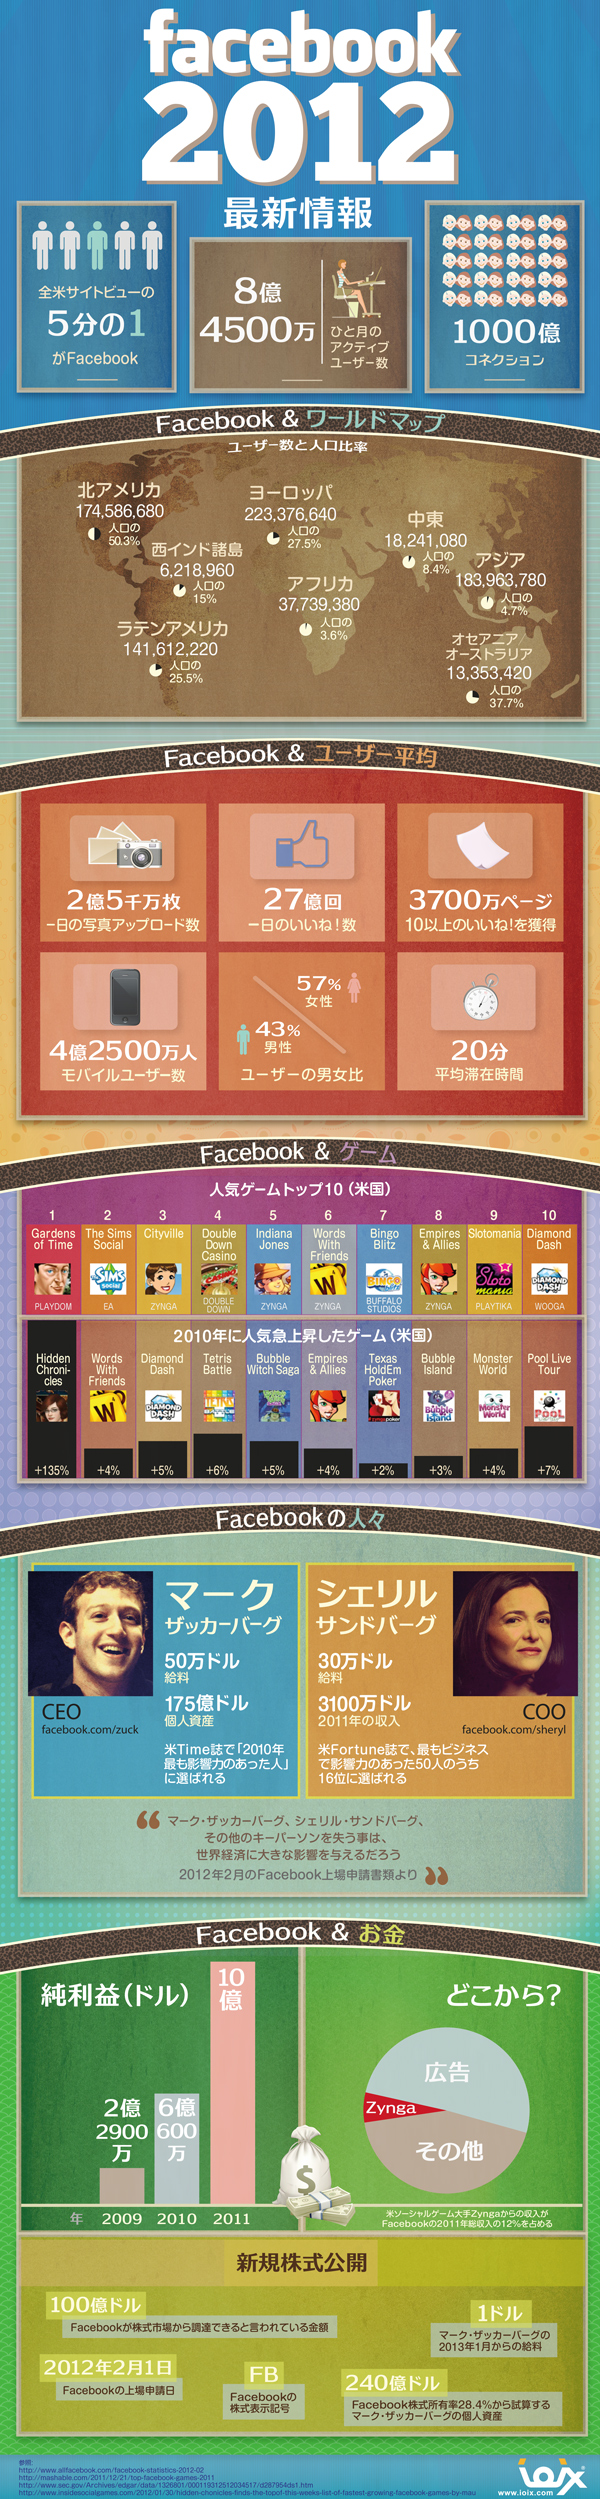 インフォグラフィックス:Facebookの2012年最新状況をまとめたインフォグラフィック